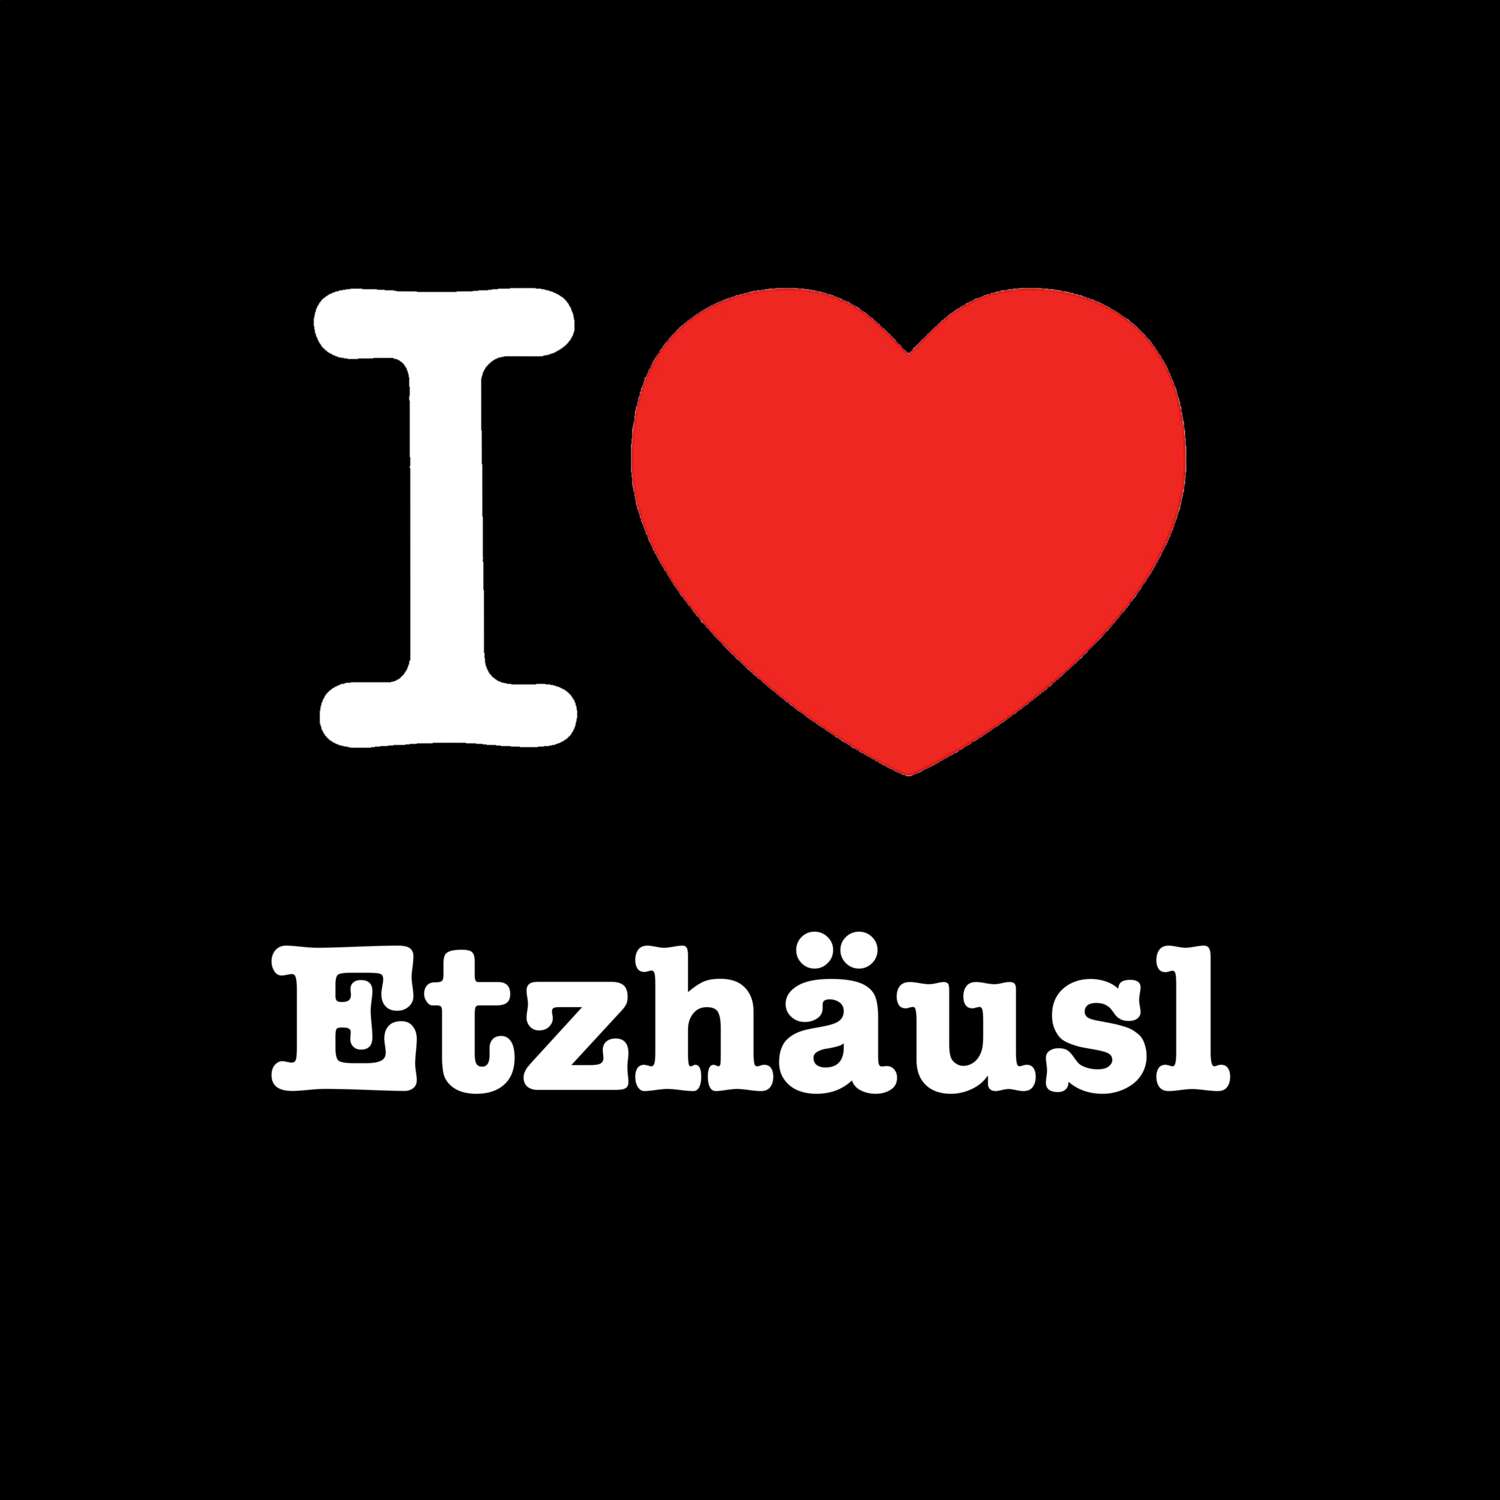 Etzhäusl T-Shirt »I love«